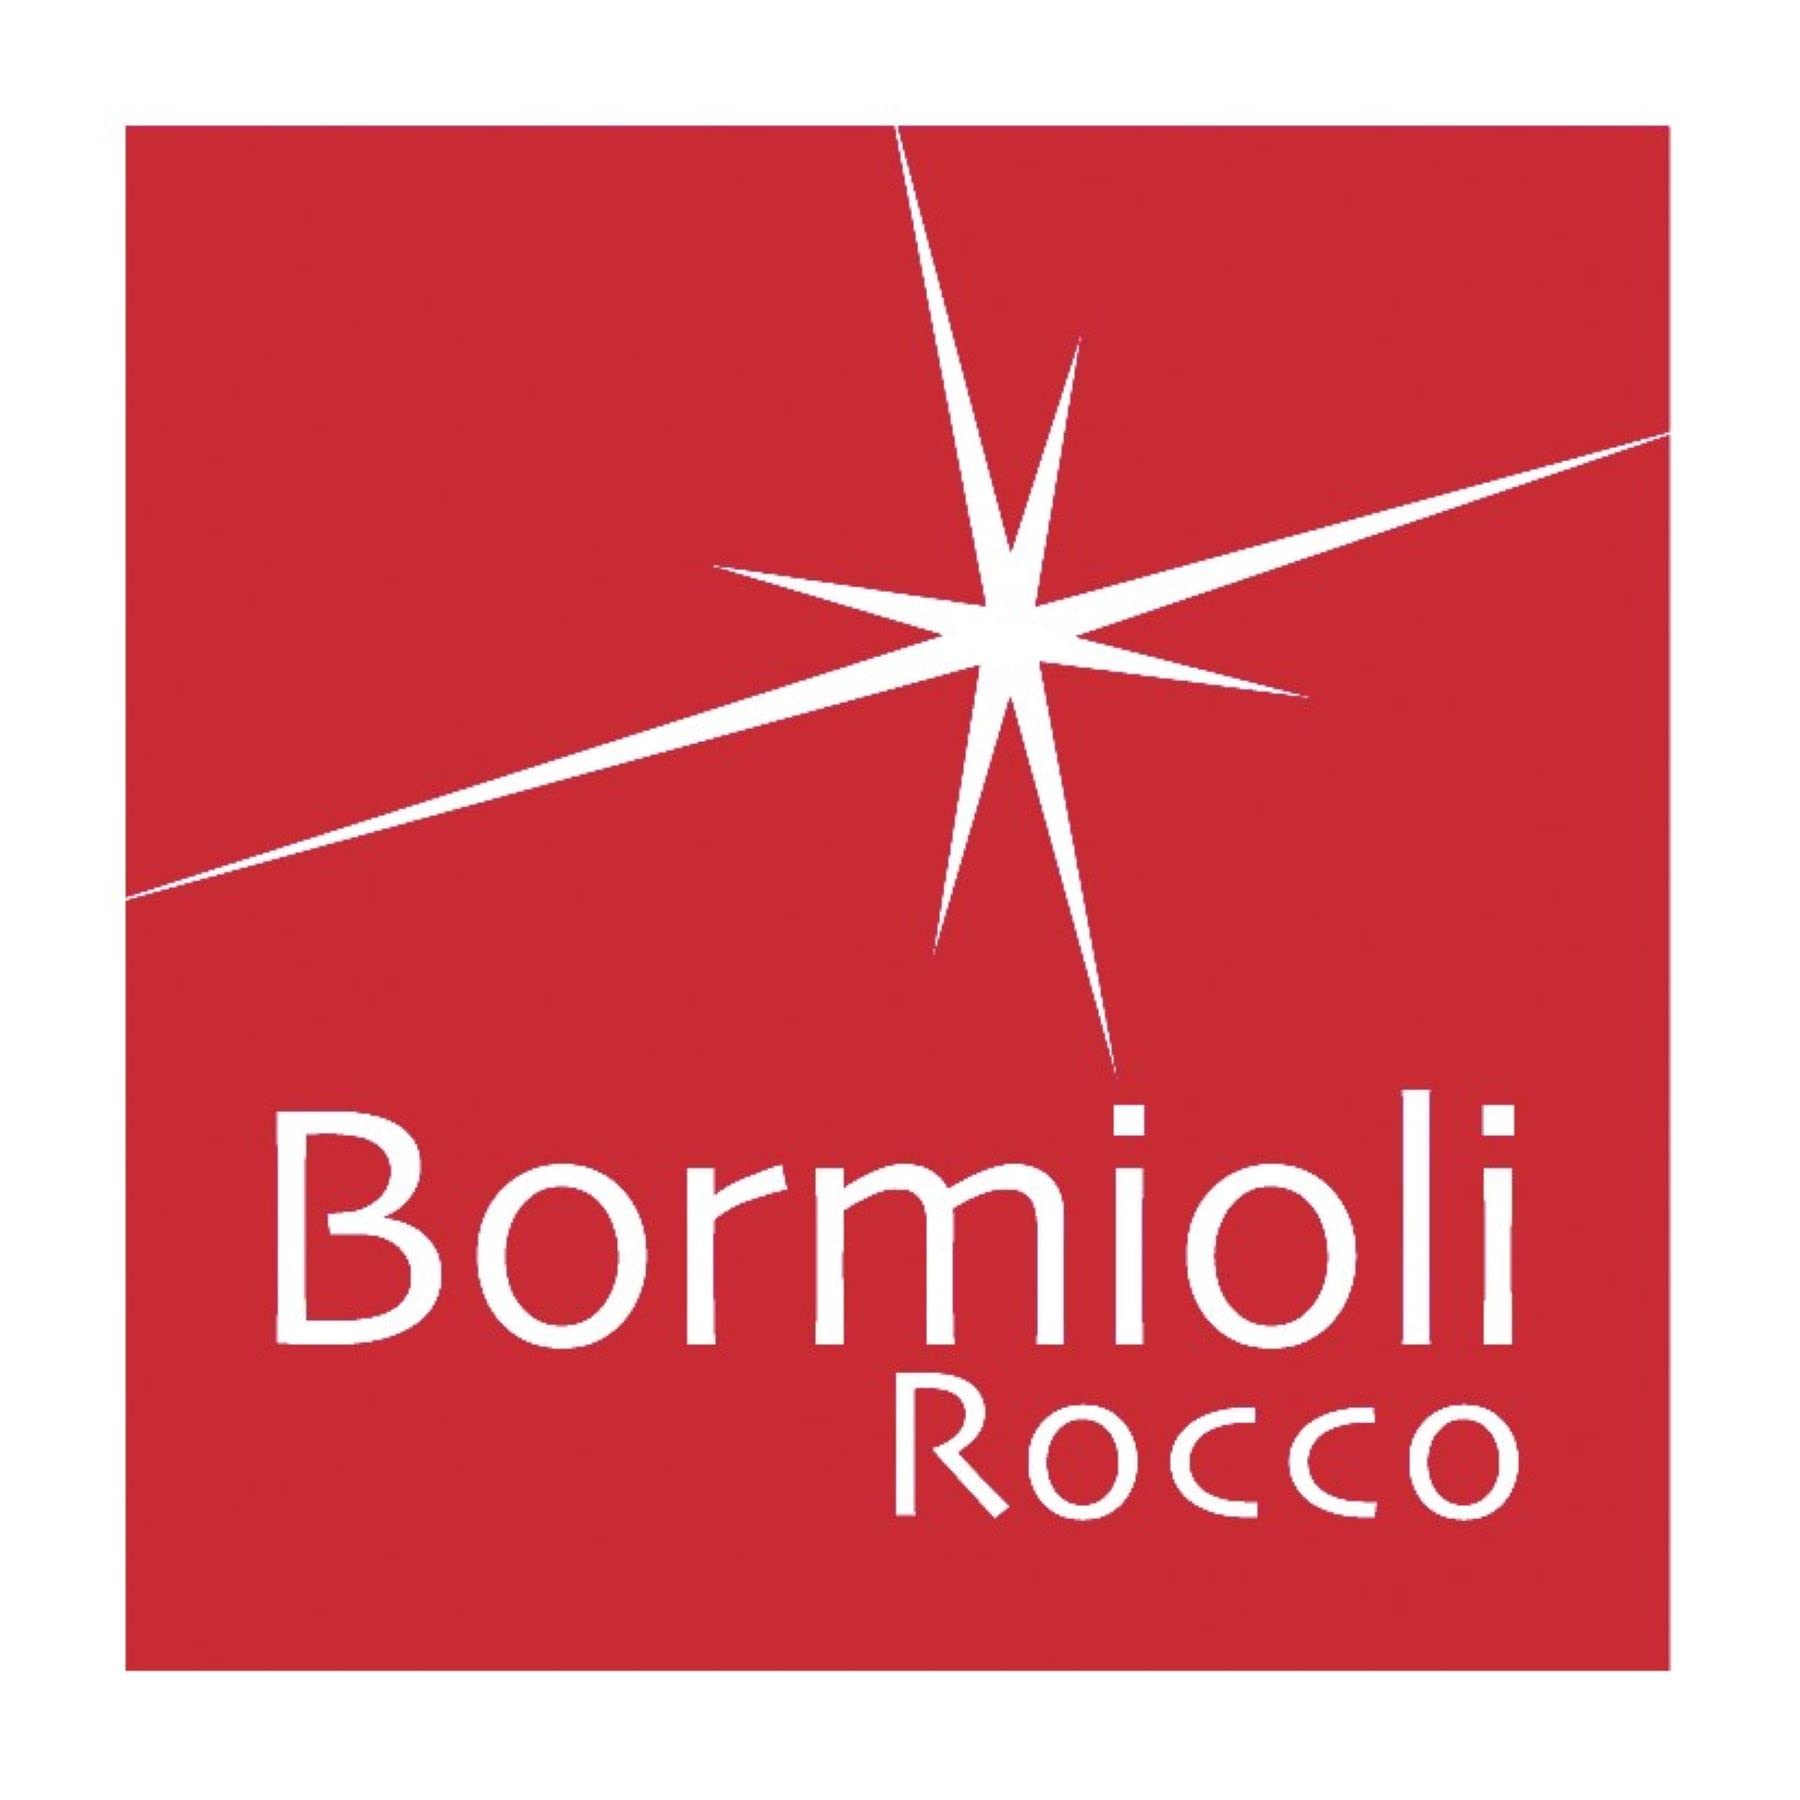 Bormioli Rocco 3.59920 (00237) RBR7905 Quatro Stadium Owner, 0.5 gal (1.5 L)